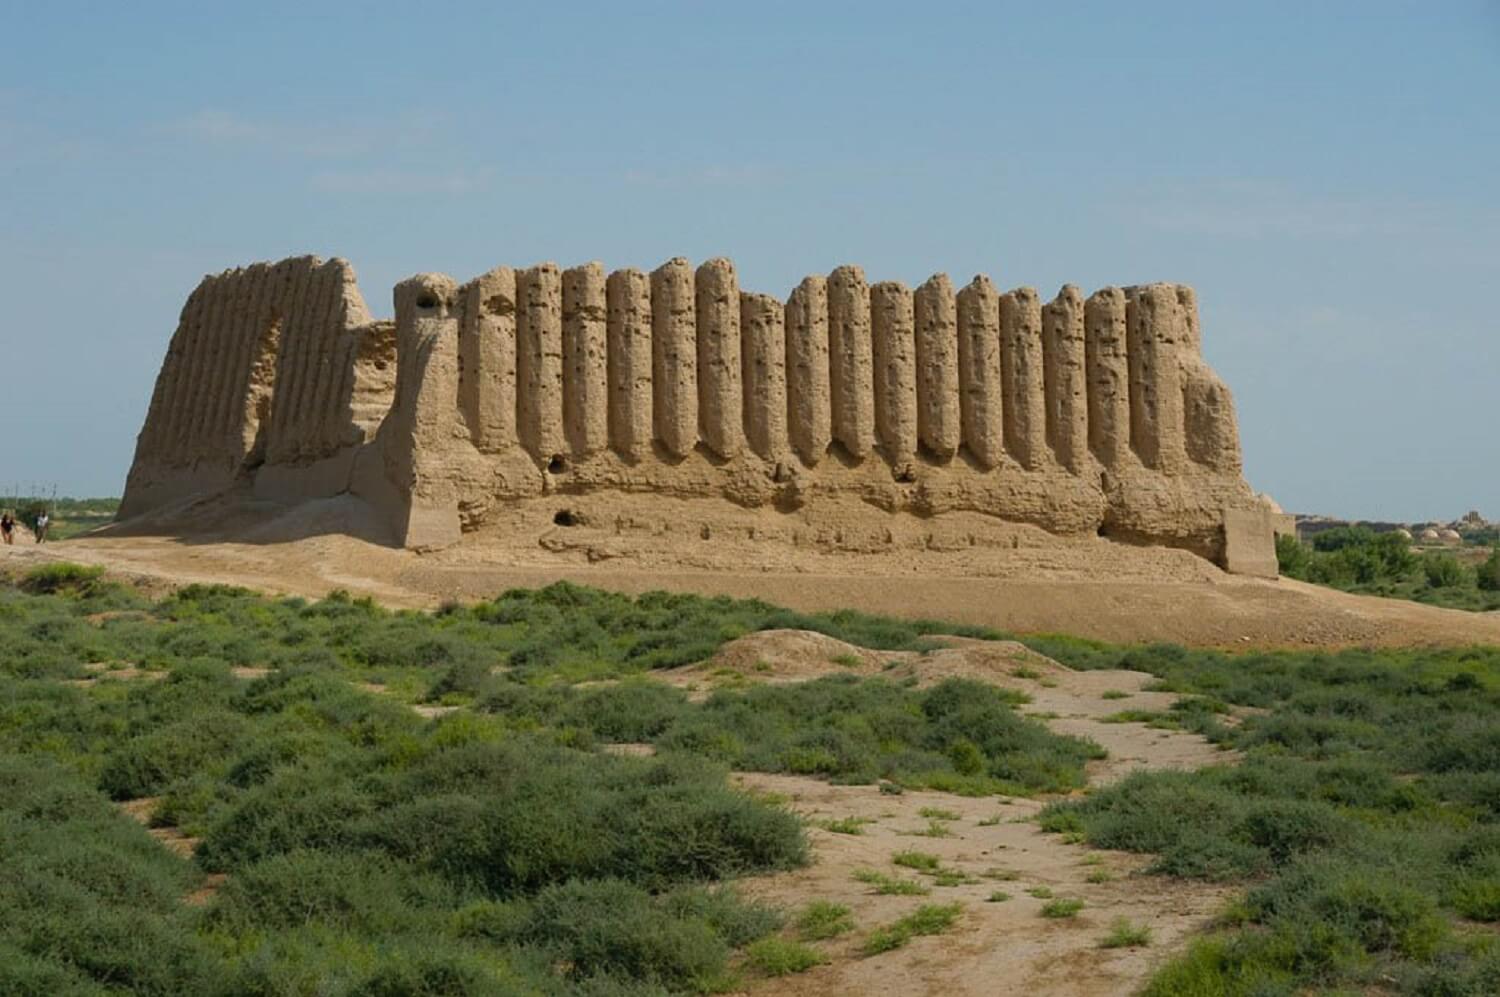 Merv in Turkmenistan